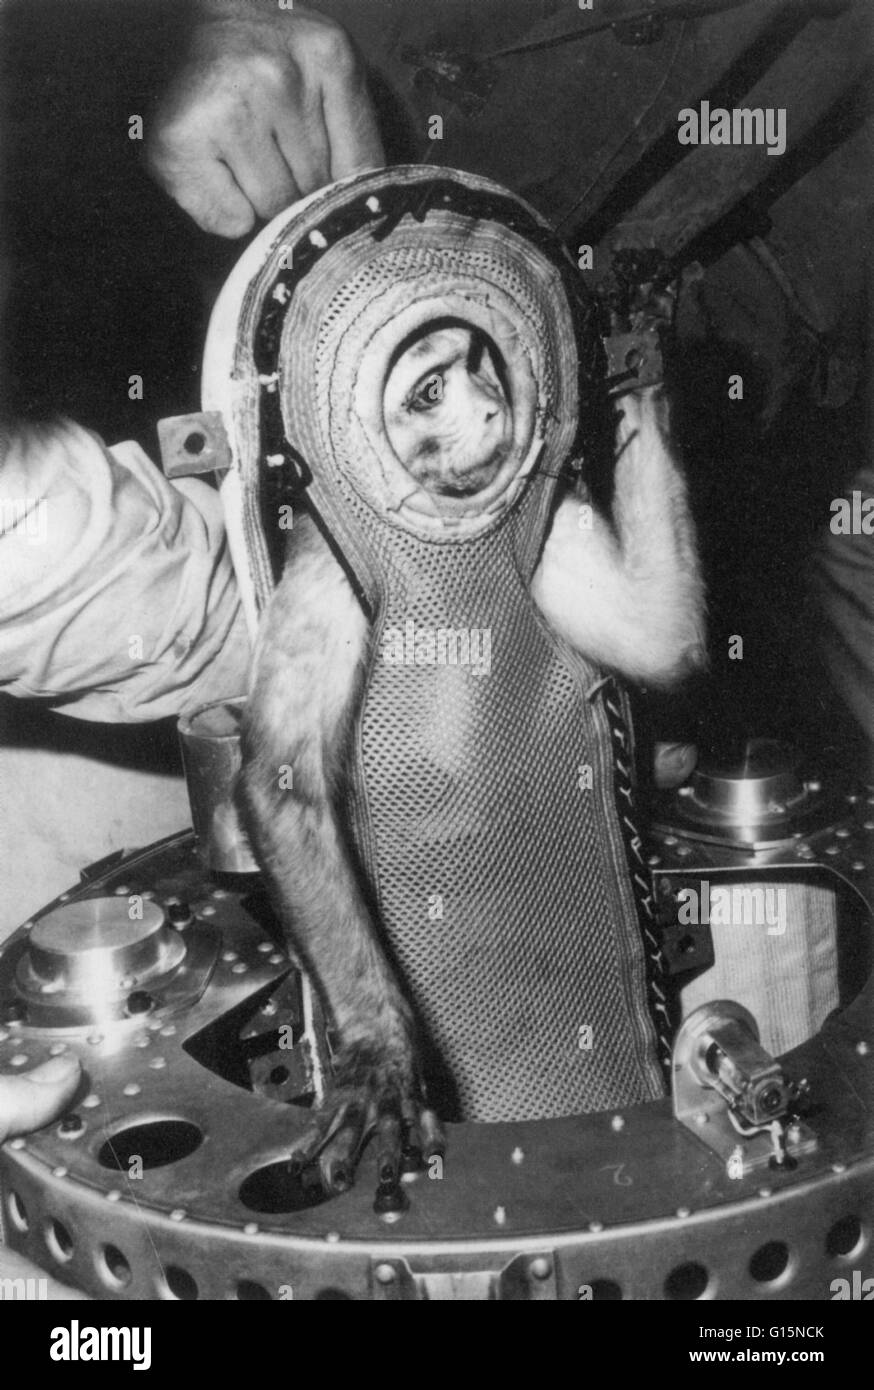 Sam, un mono rhesus que, el 4 de diciembre de 1959, voló en el Little Joe 2 en el programa Mercury a 53 millas de alto. El Little Joe 2 era una prueba de la cápsula espacial Mercury, y Sam fue enviado para probar los efectos adversos del espacio en los seres humanos. Volvió el mono Foto de stock